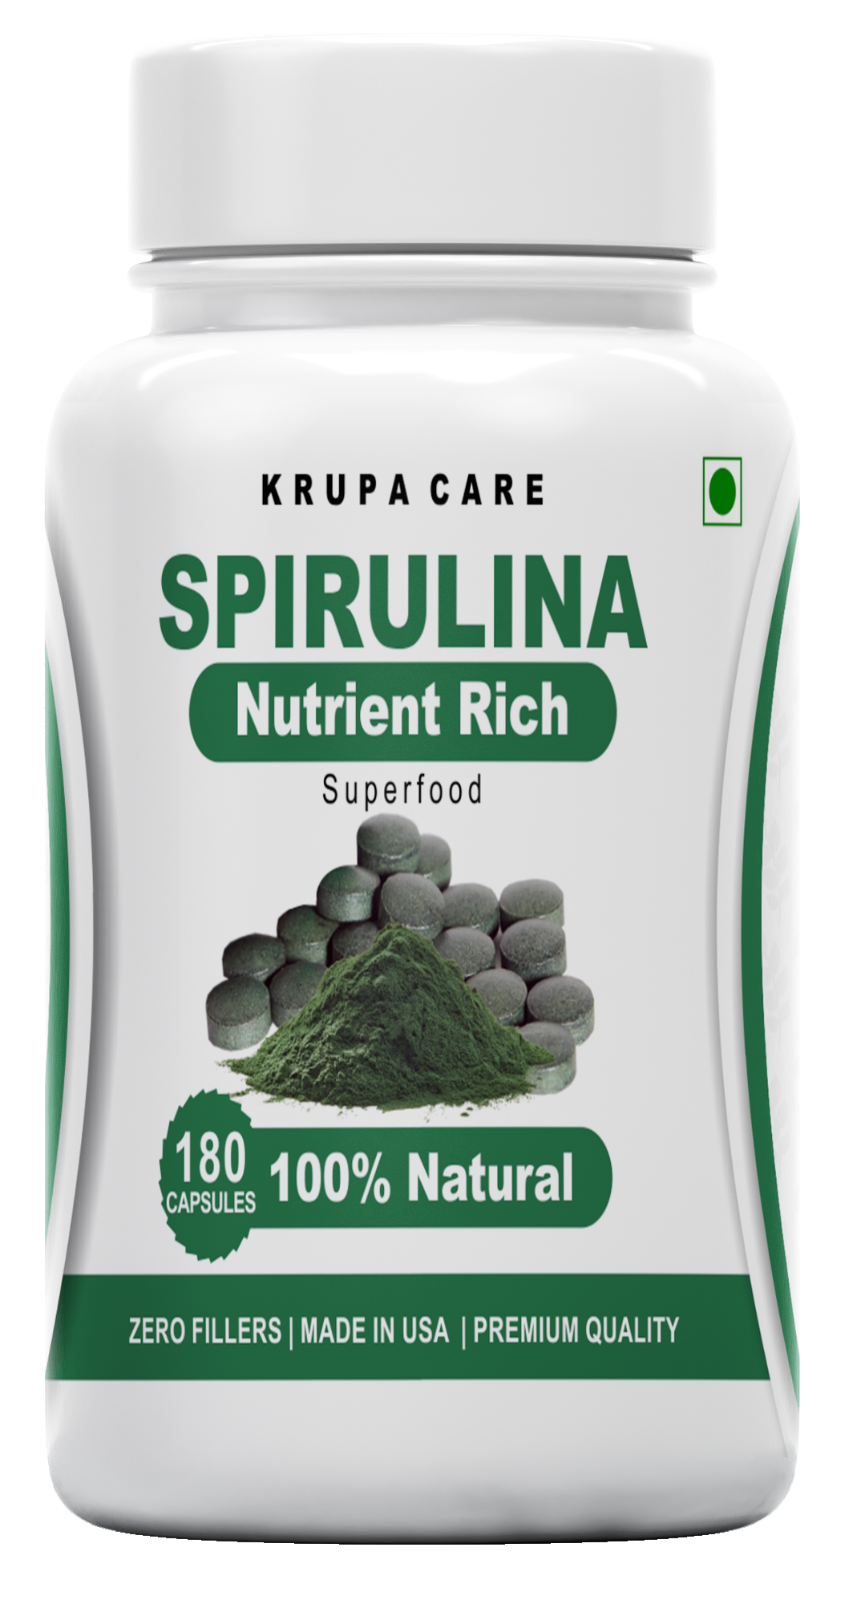 Krupacare Organic spirulina tablets, 500mg per serving, 180tablets - superfoods